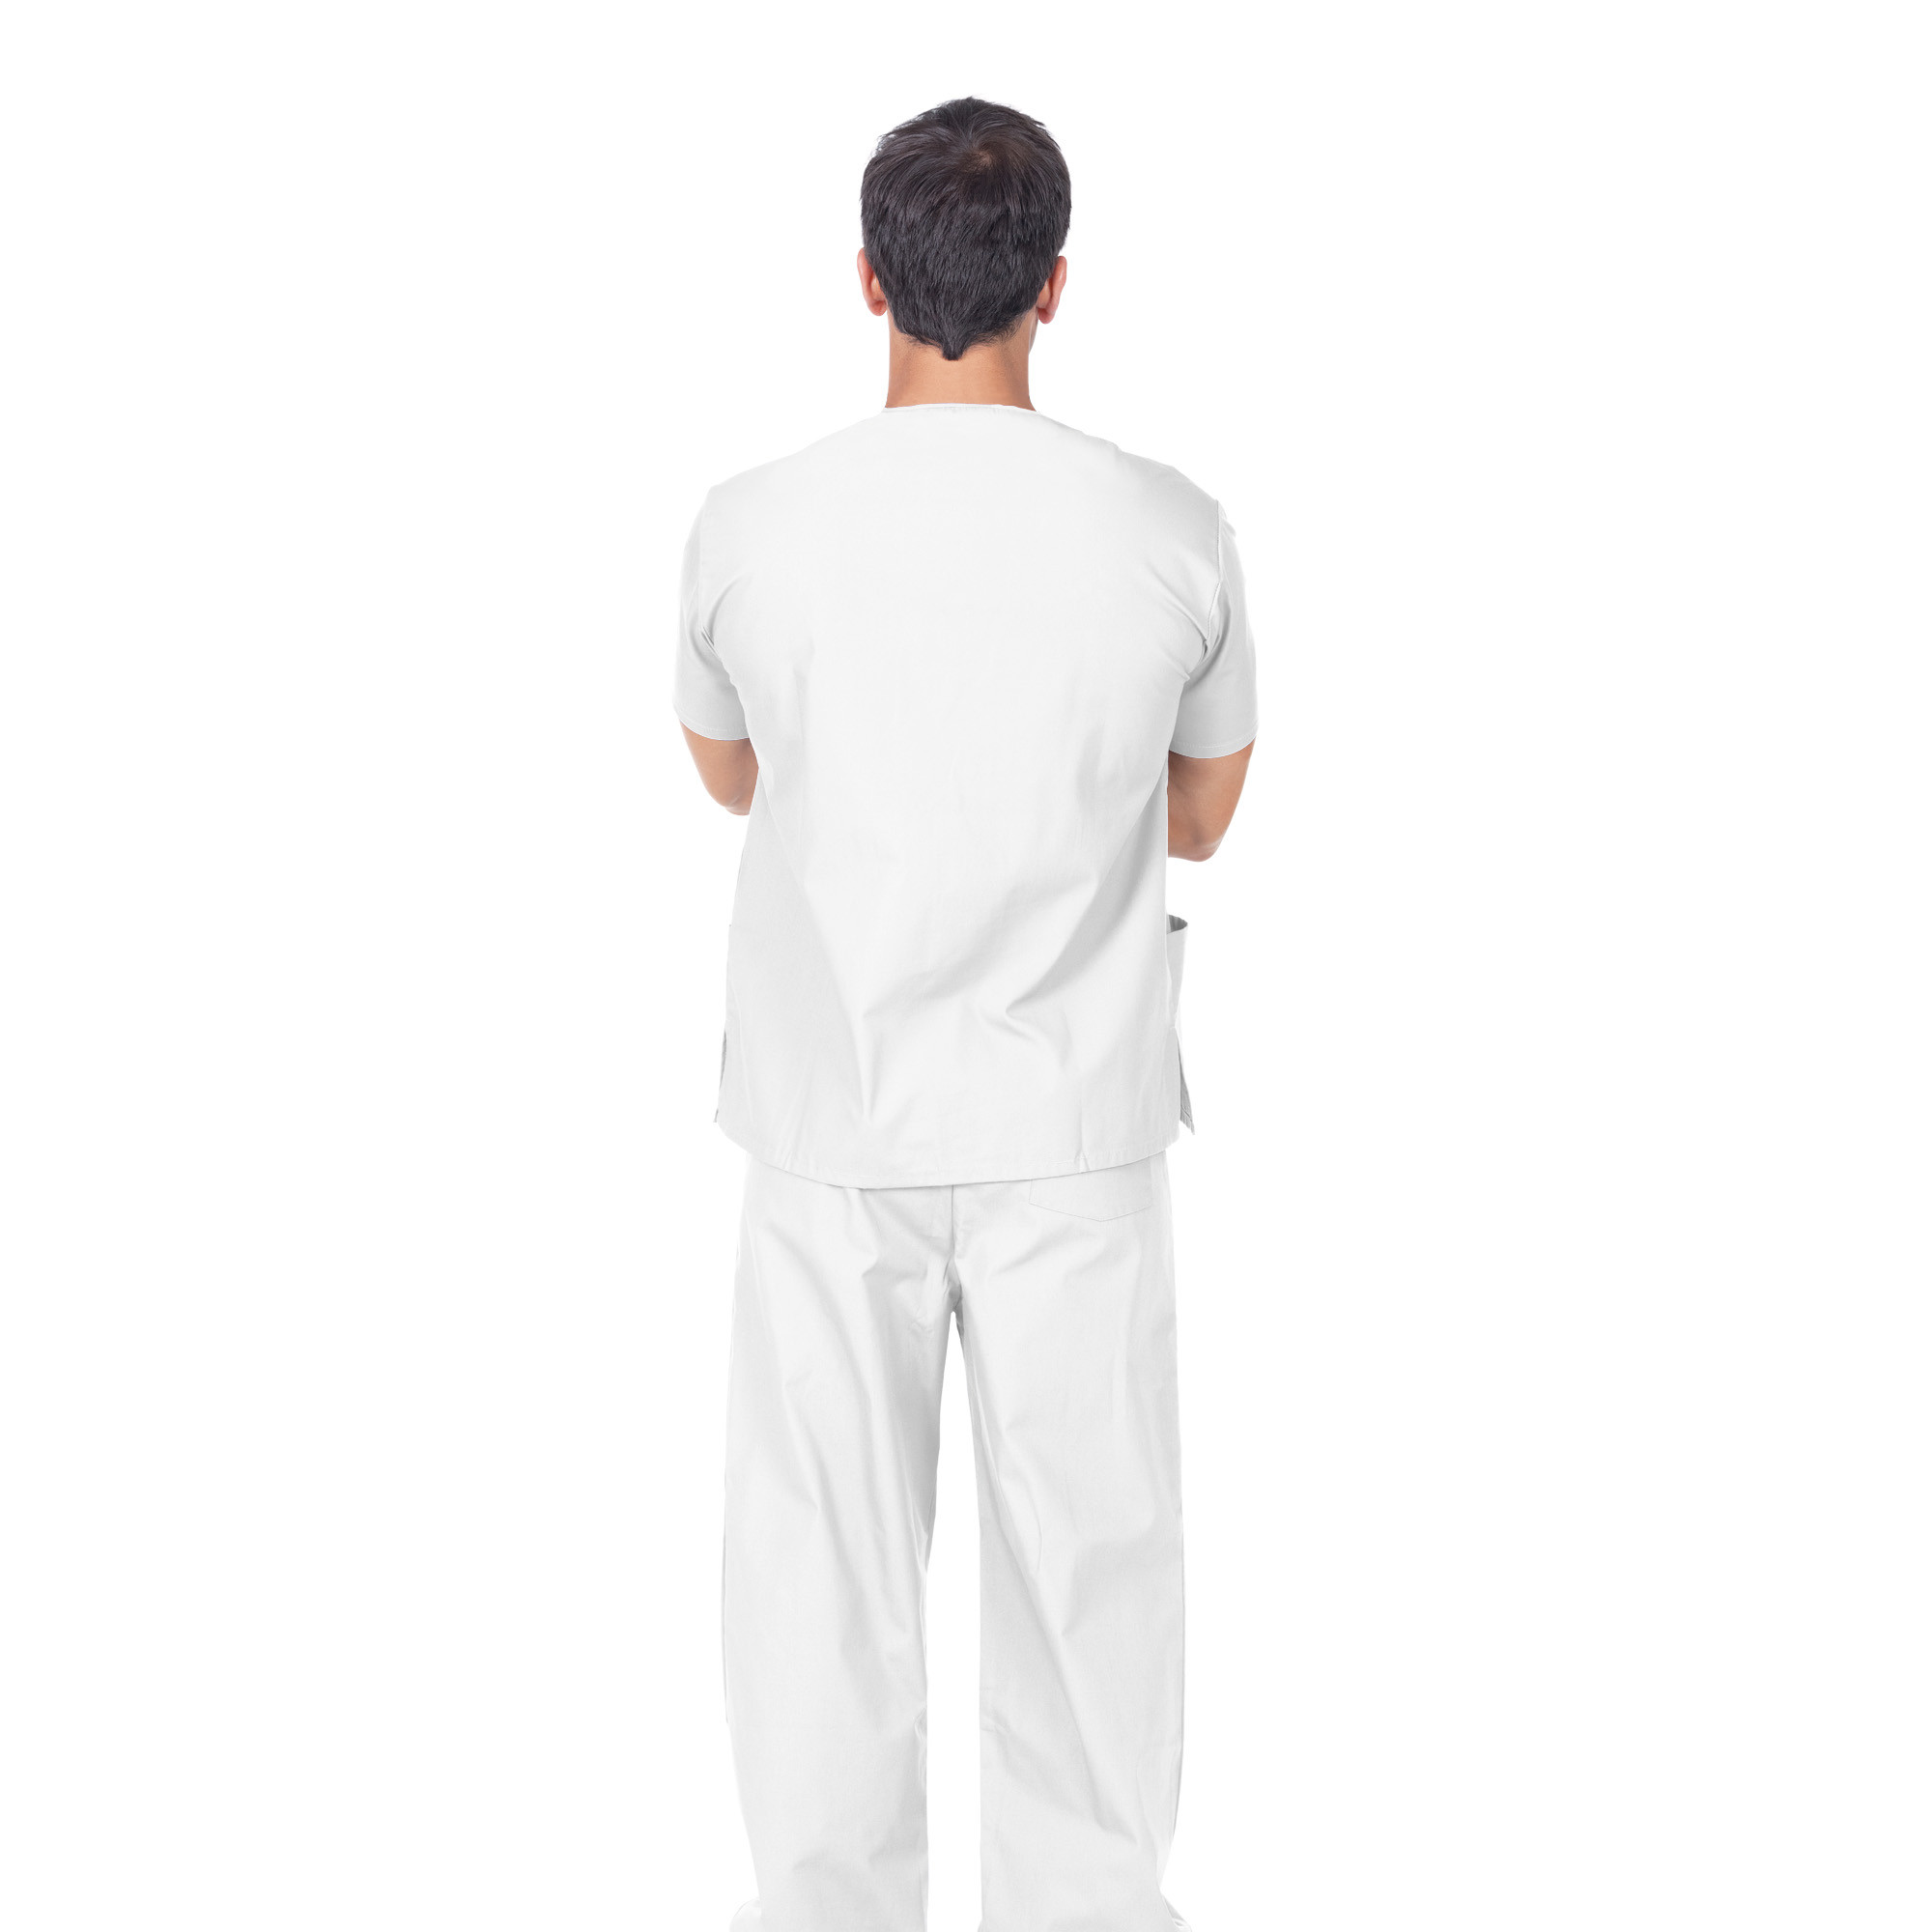 Pantalon professionnel en coton blanc Unisex taille M